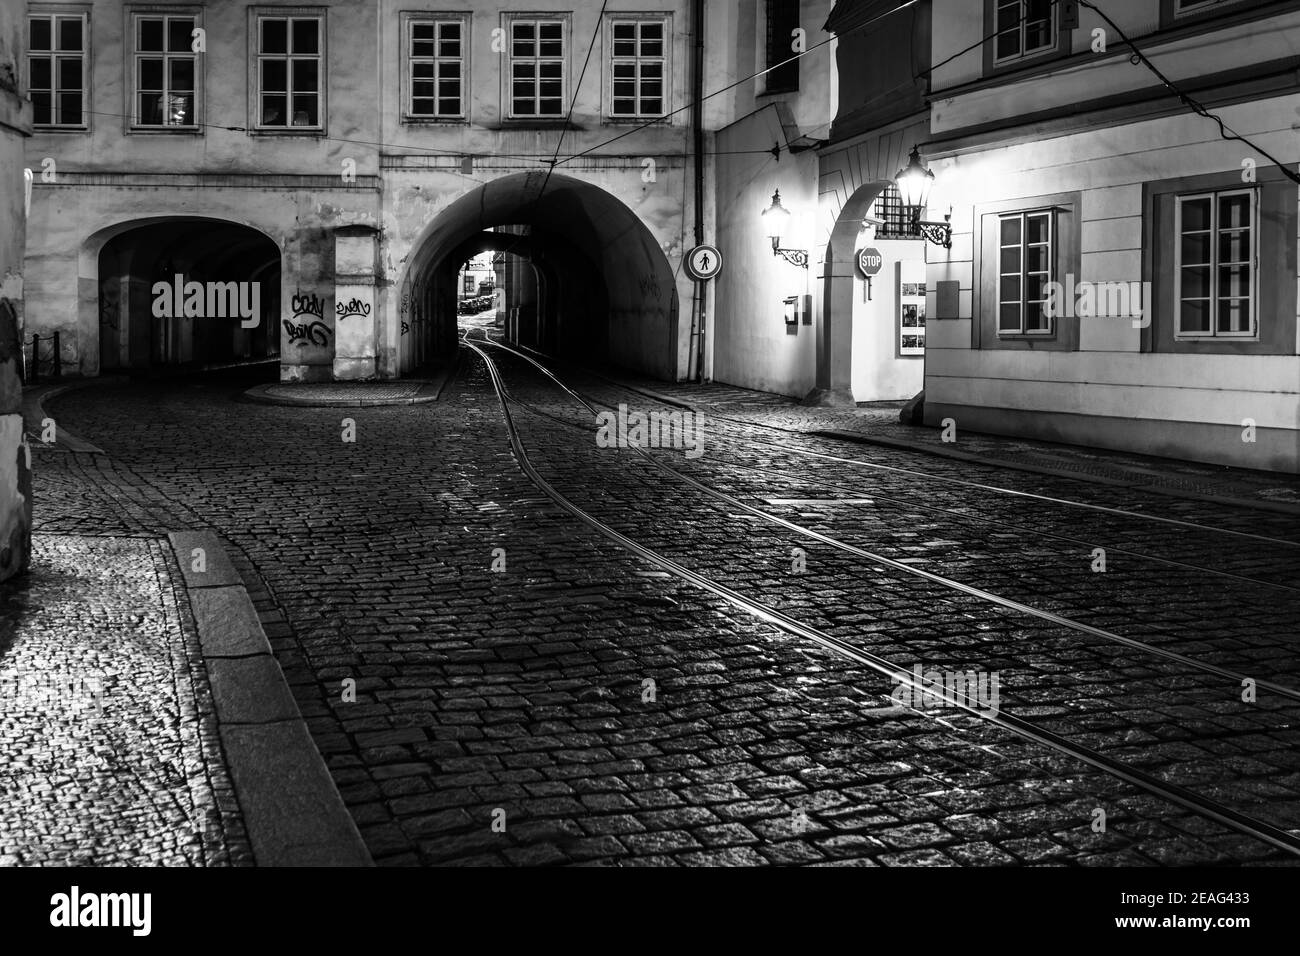 Dunkler Tunnel in der Letenska Straße von Prag, Tschechische Republik. Schwarzweiß-Bild. Stockfoto